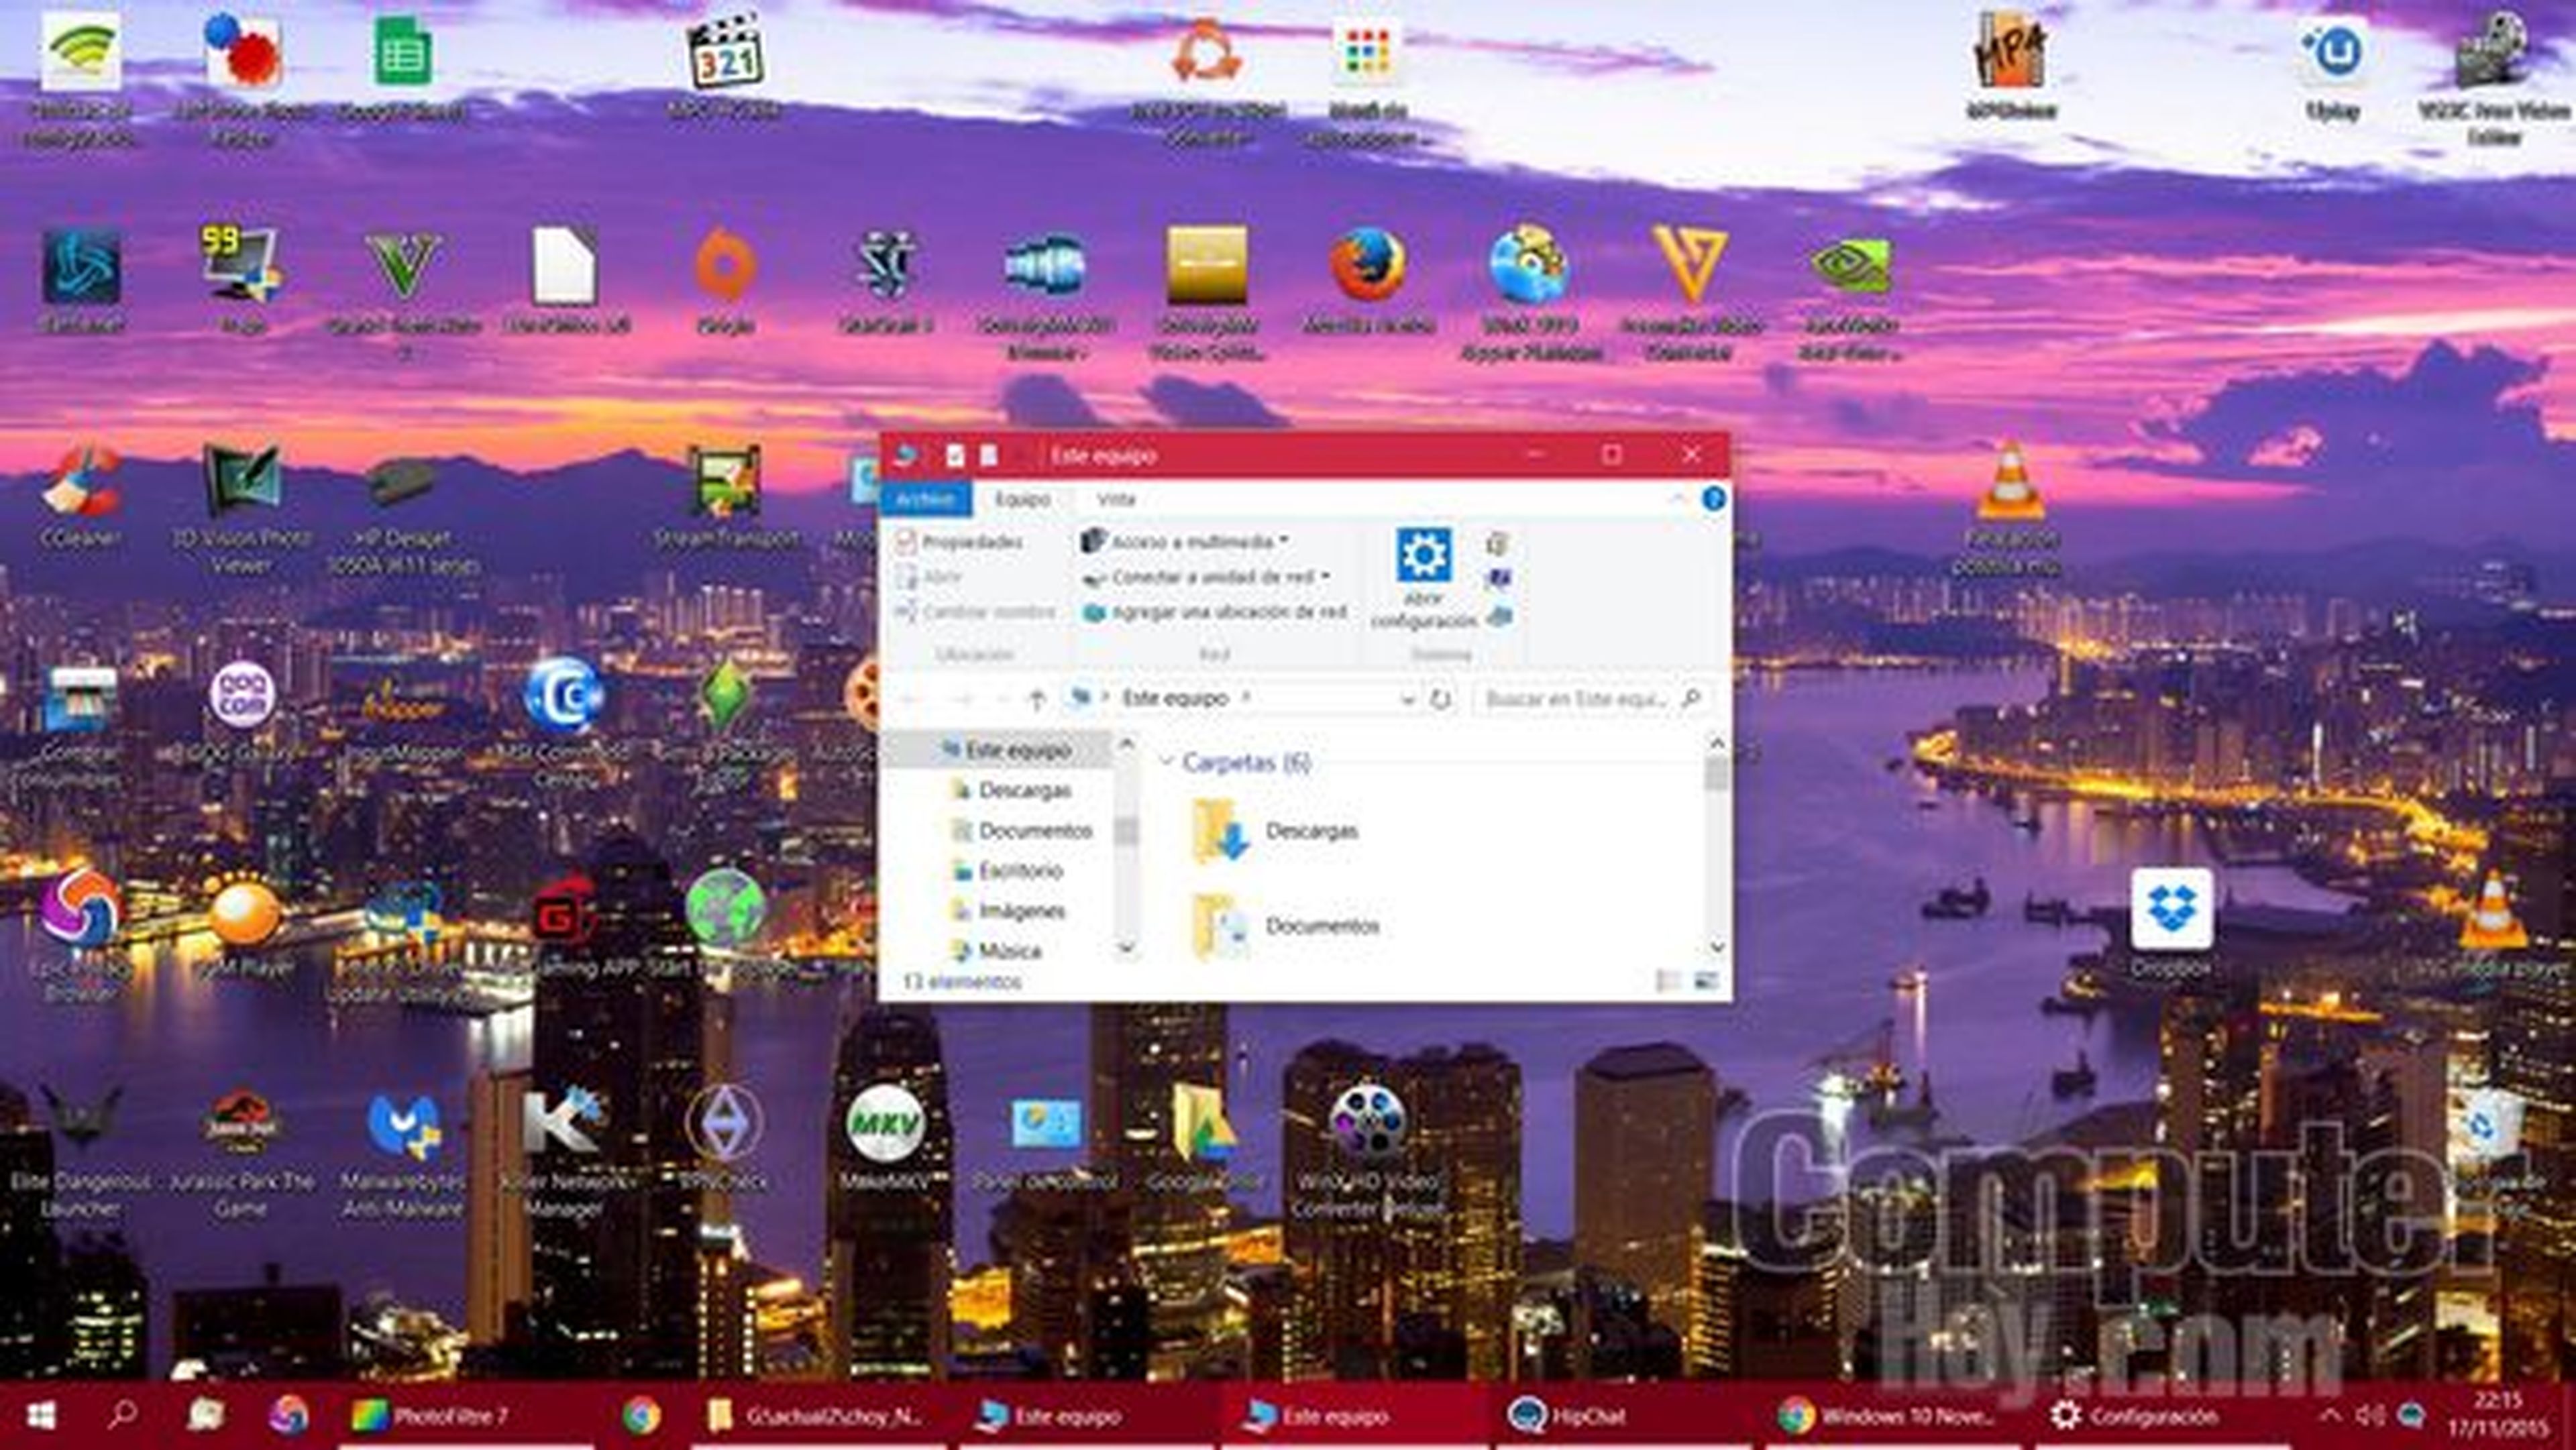 Windows 10 Threshold 2 novedades y mejoras